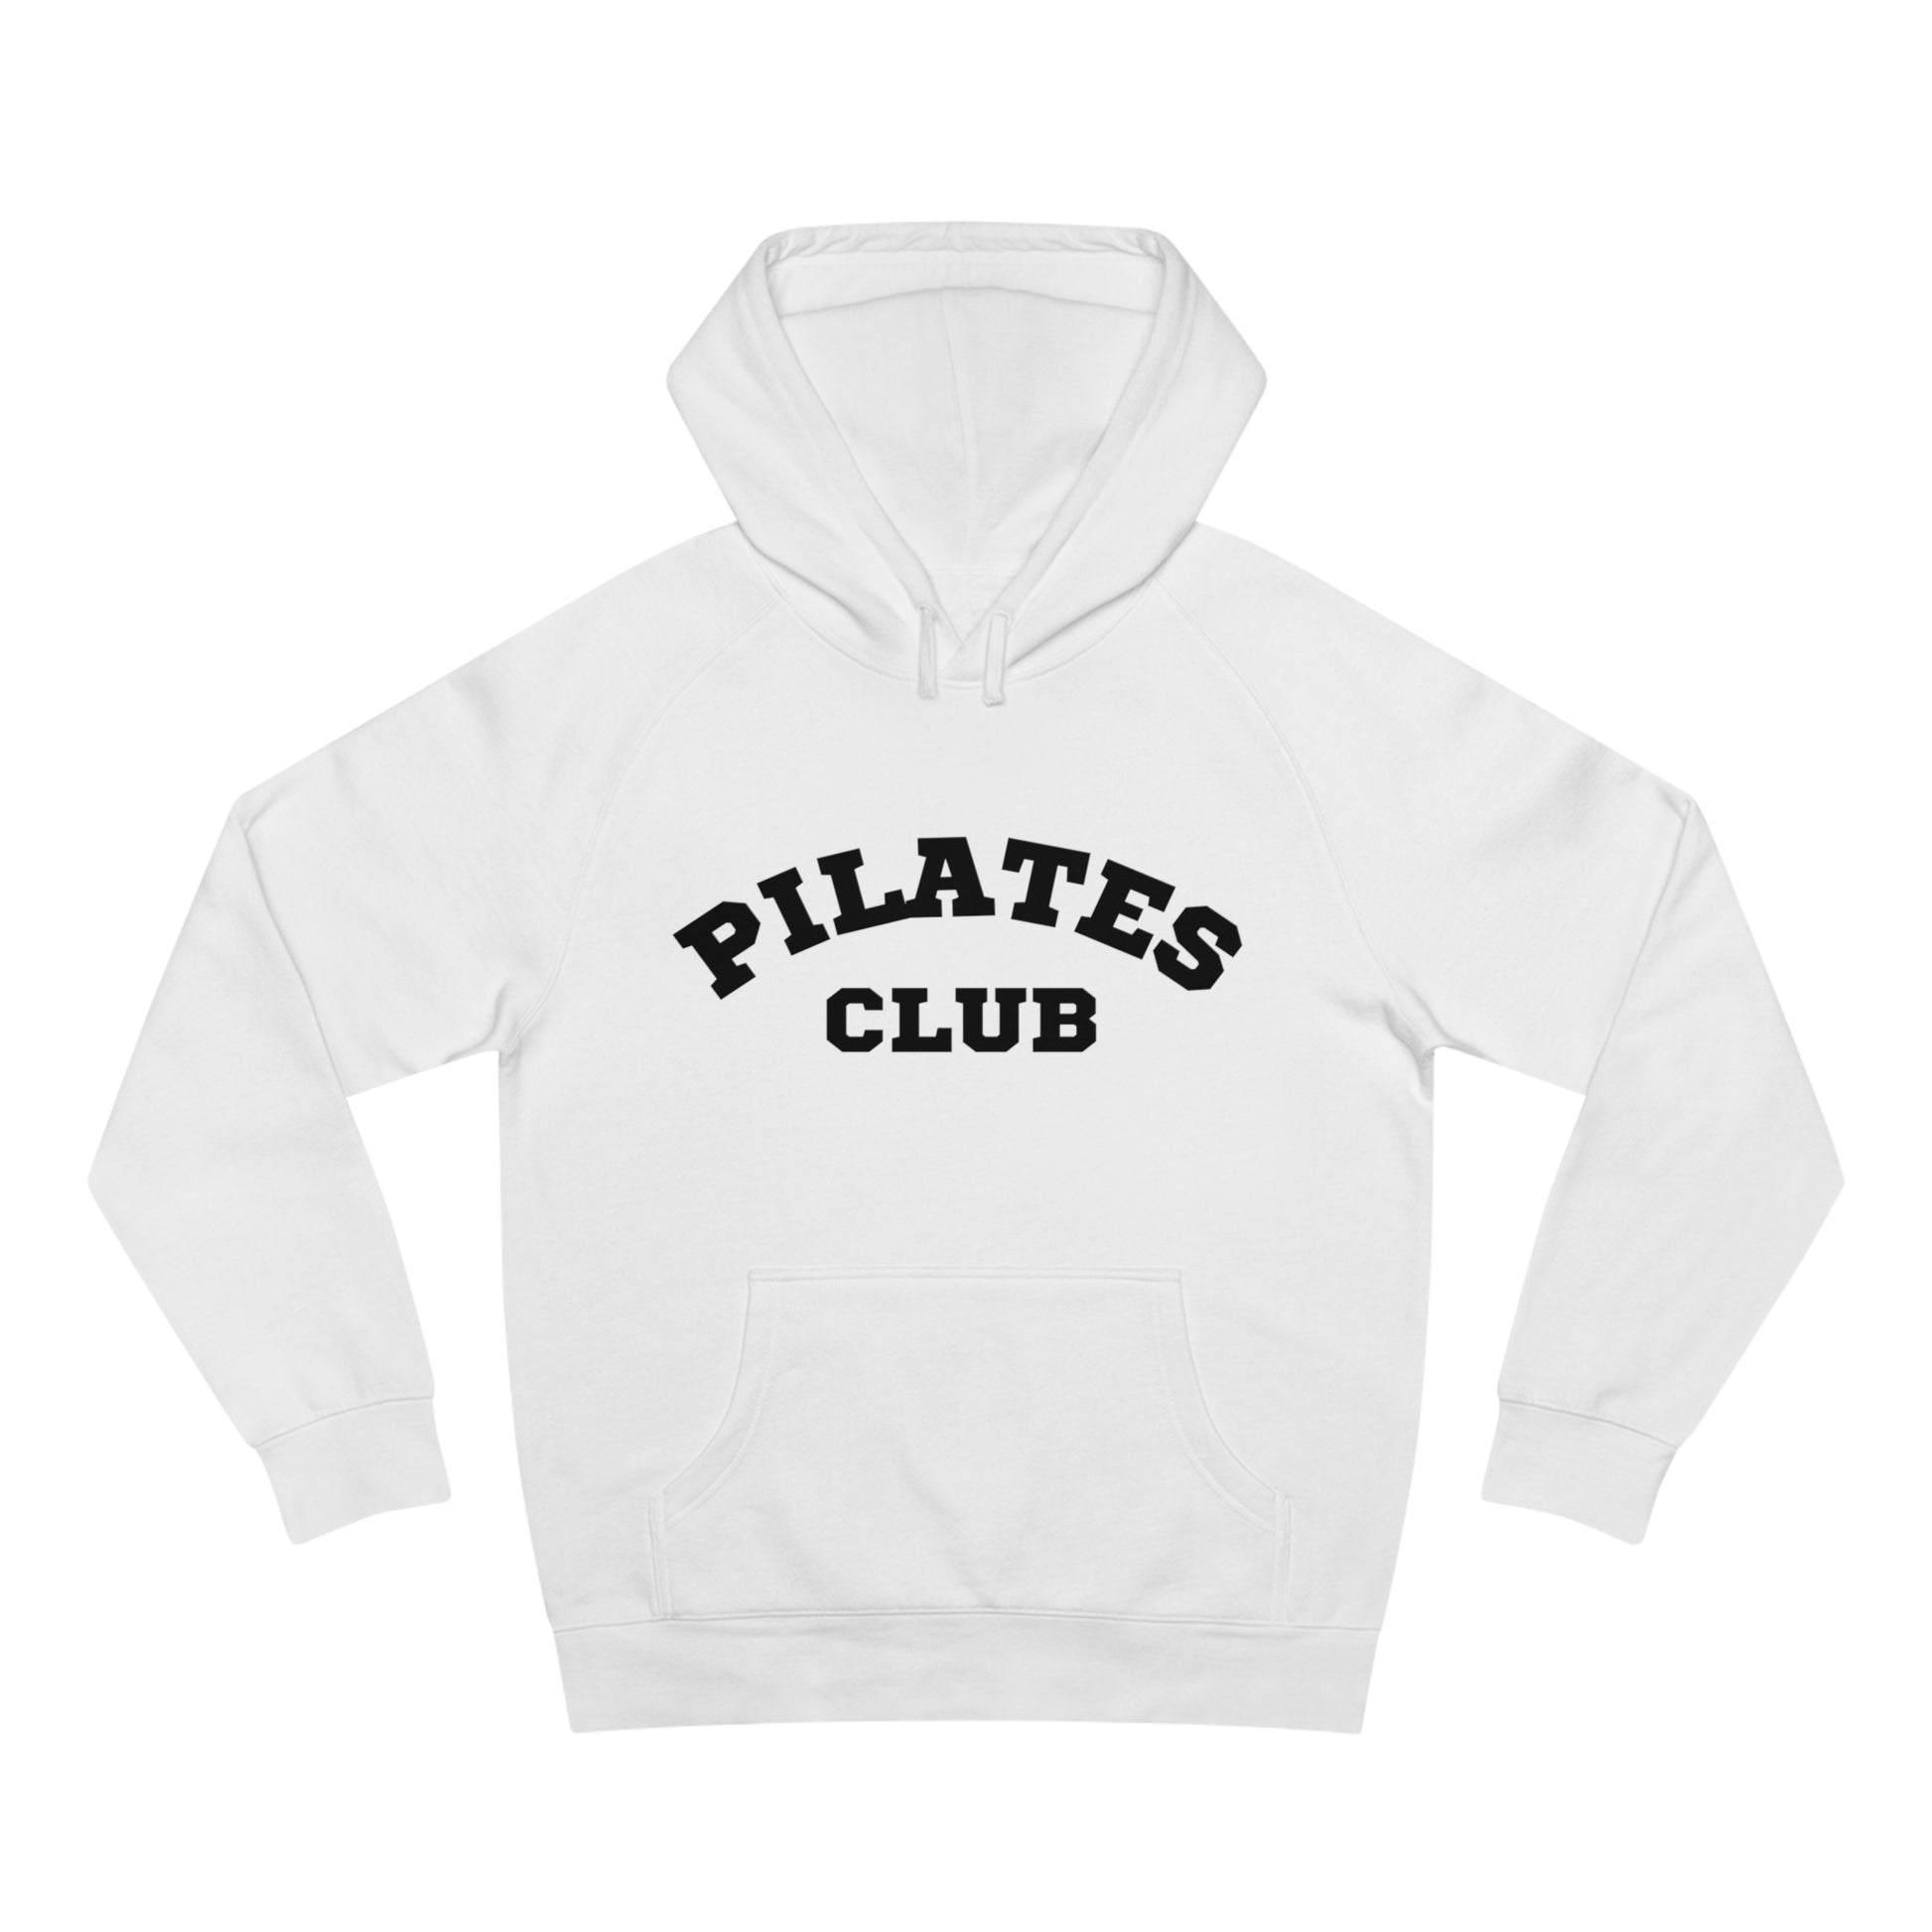 Pilates Club White Hoodies